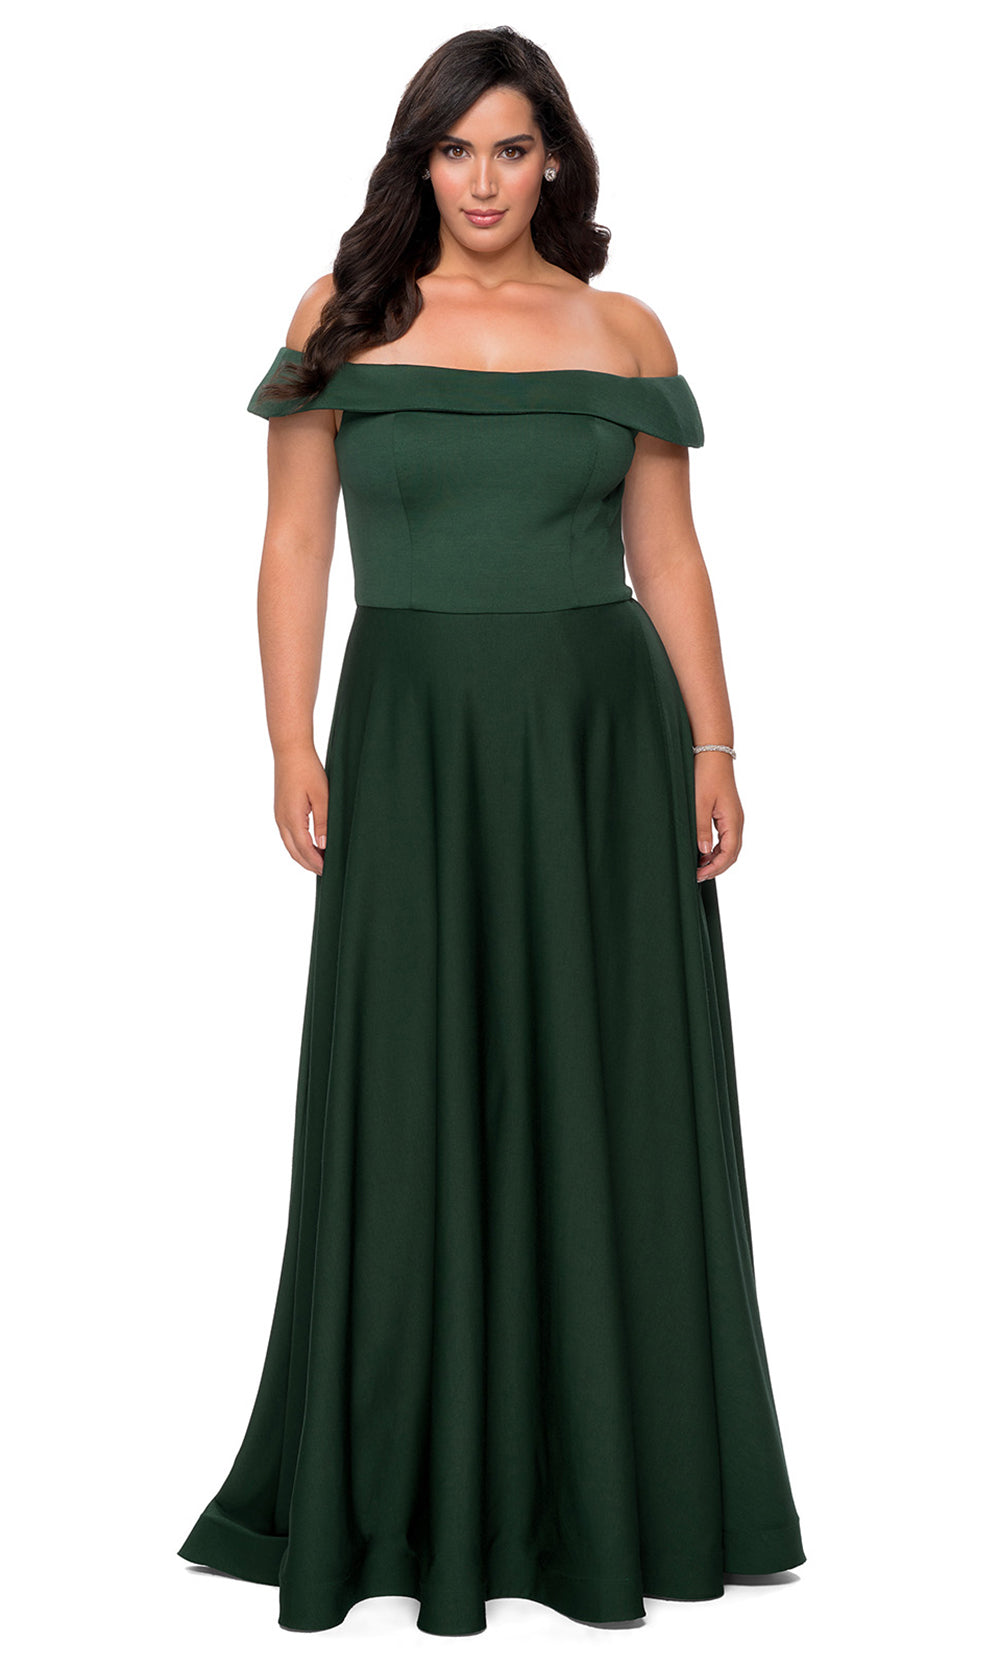 La Femme - 29007 Off Shoulder Jersey A-Line Dress With Slit In Green